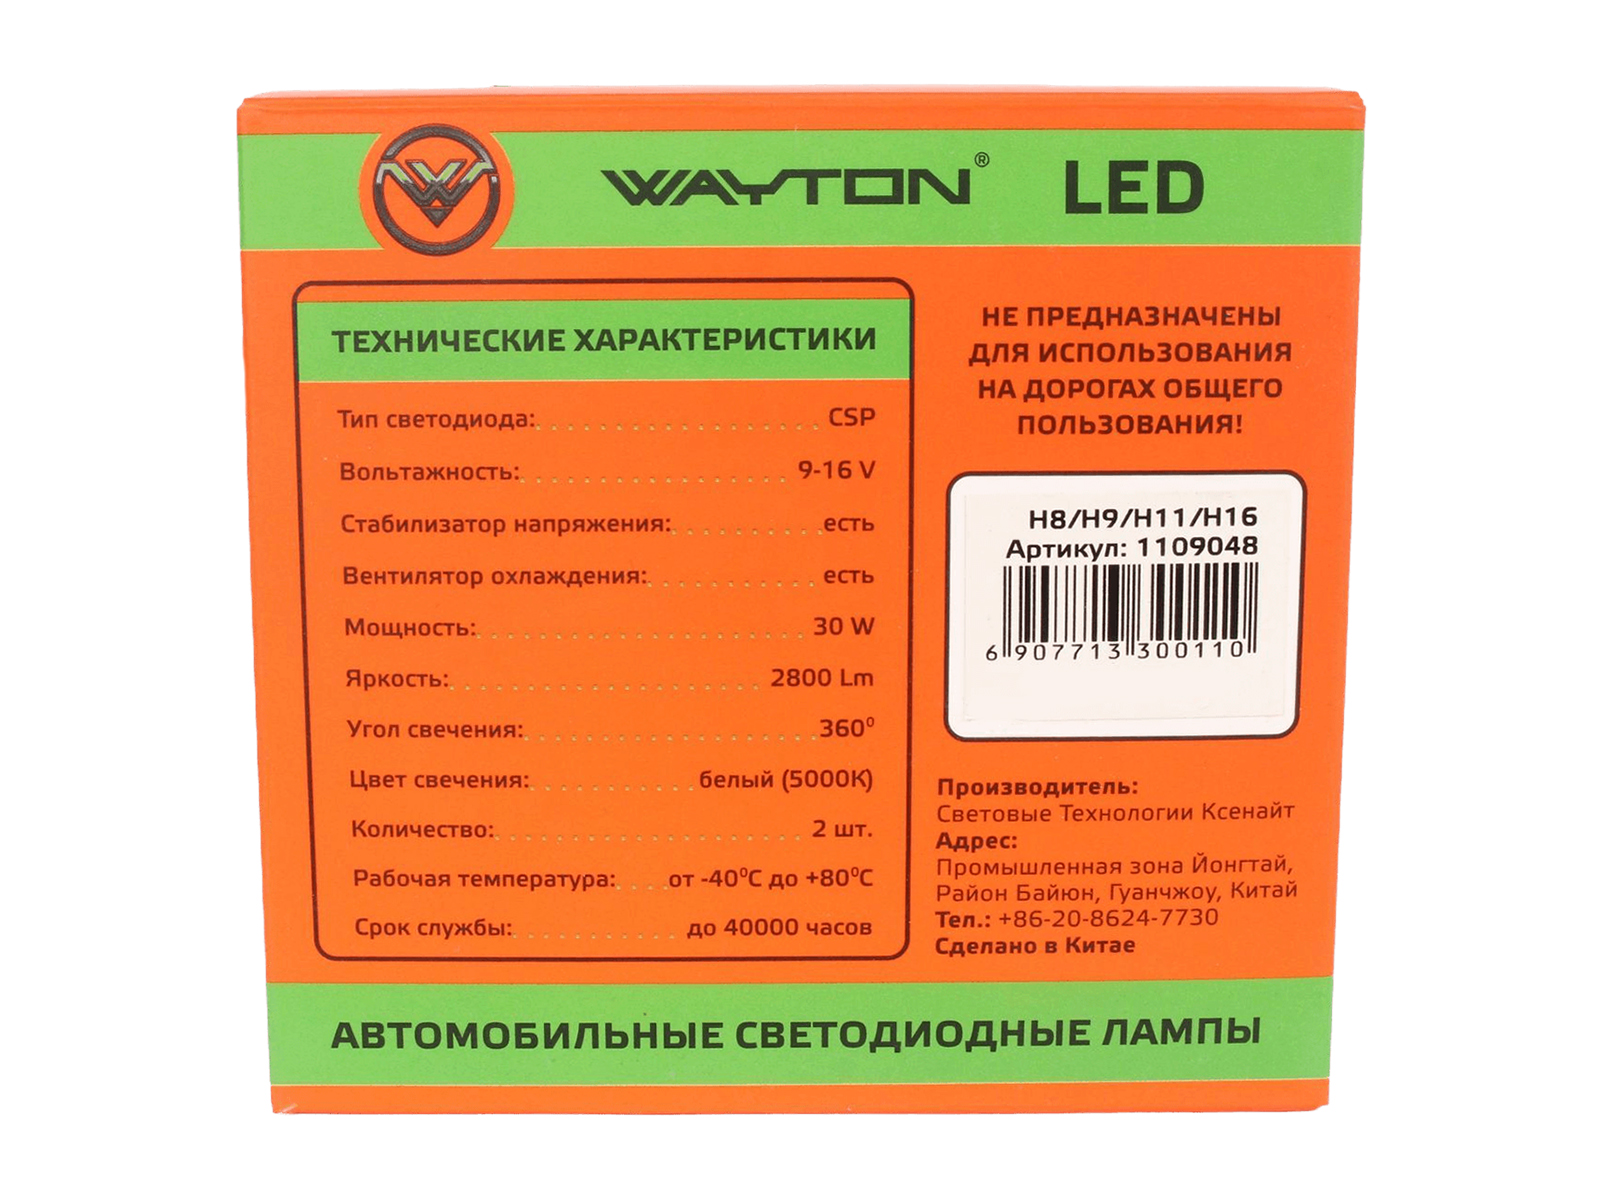 Лампа WAYTON LED-GL H8/H9/H11/H16 12V 5000K 2800Lm диодная комплект фотография №4